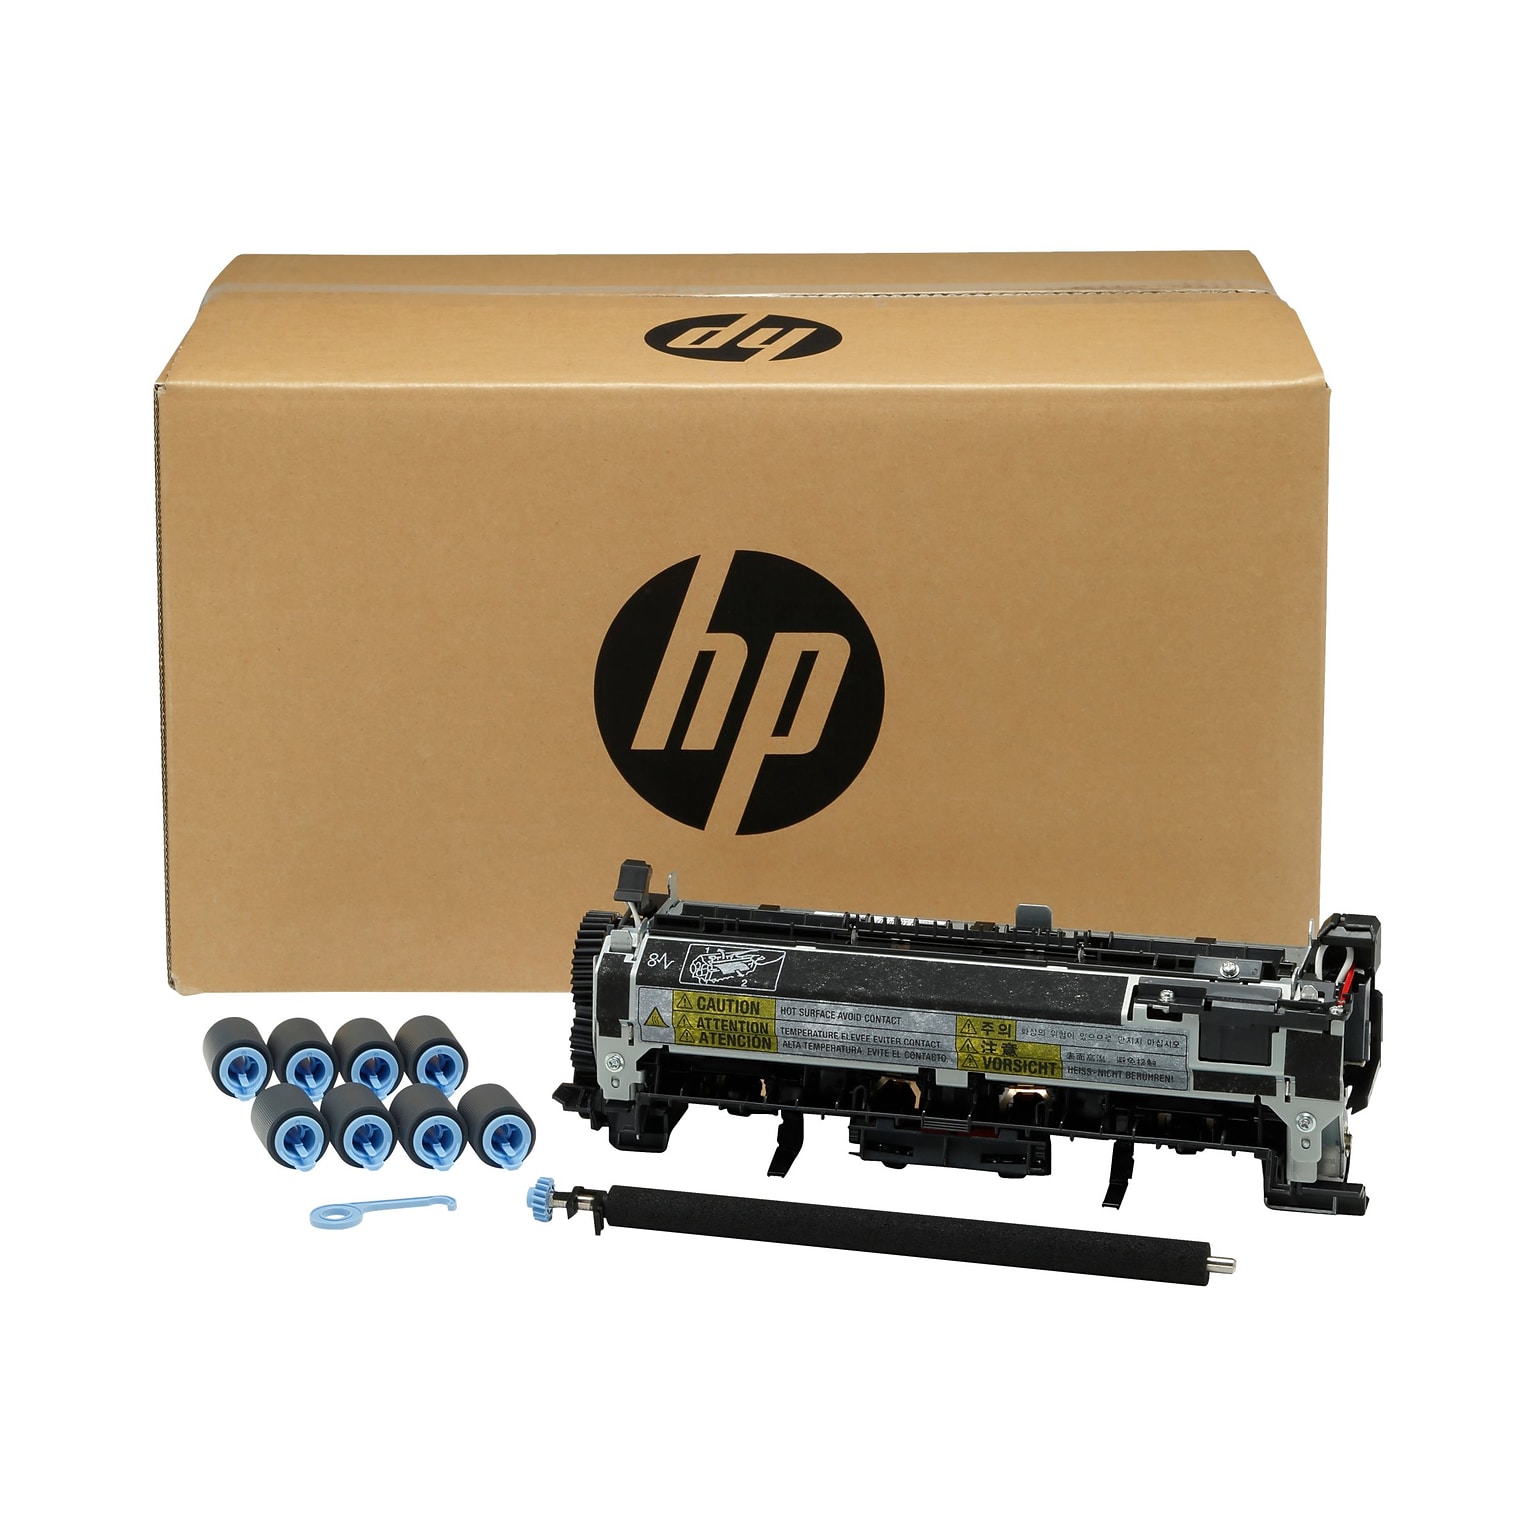 HP Maintenance Kit, Black (B3M77A)